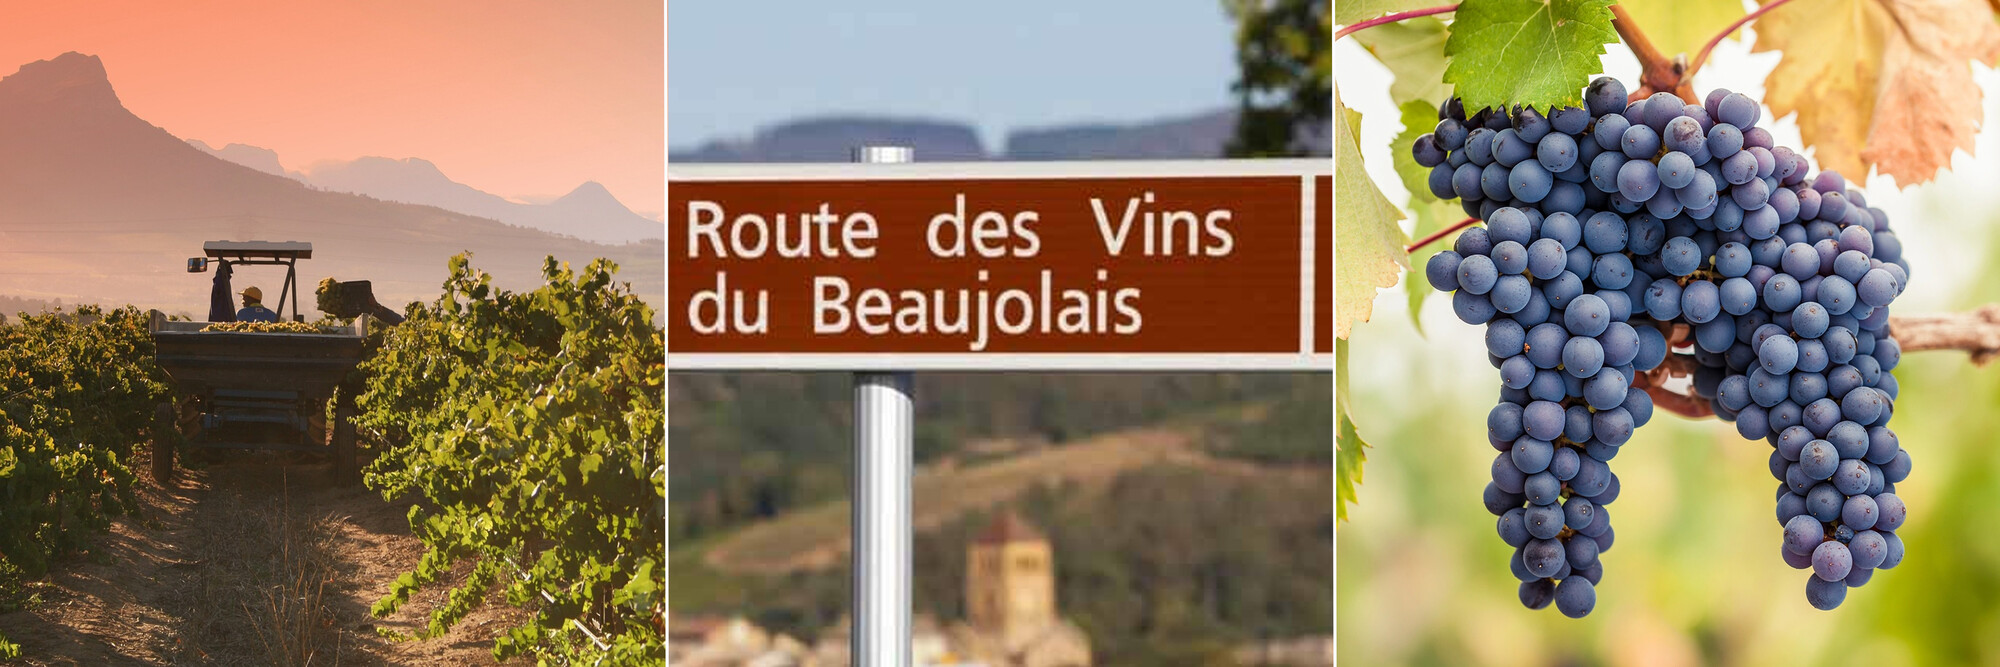 Alternatieven voor grote Bourgondische wijnen